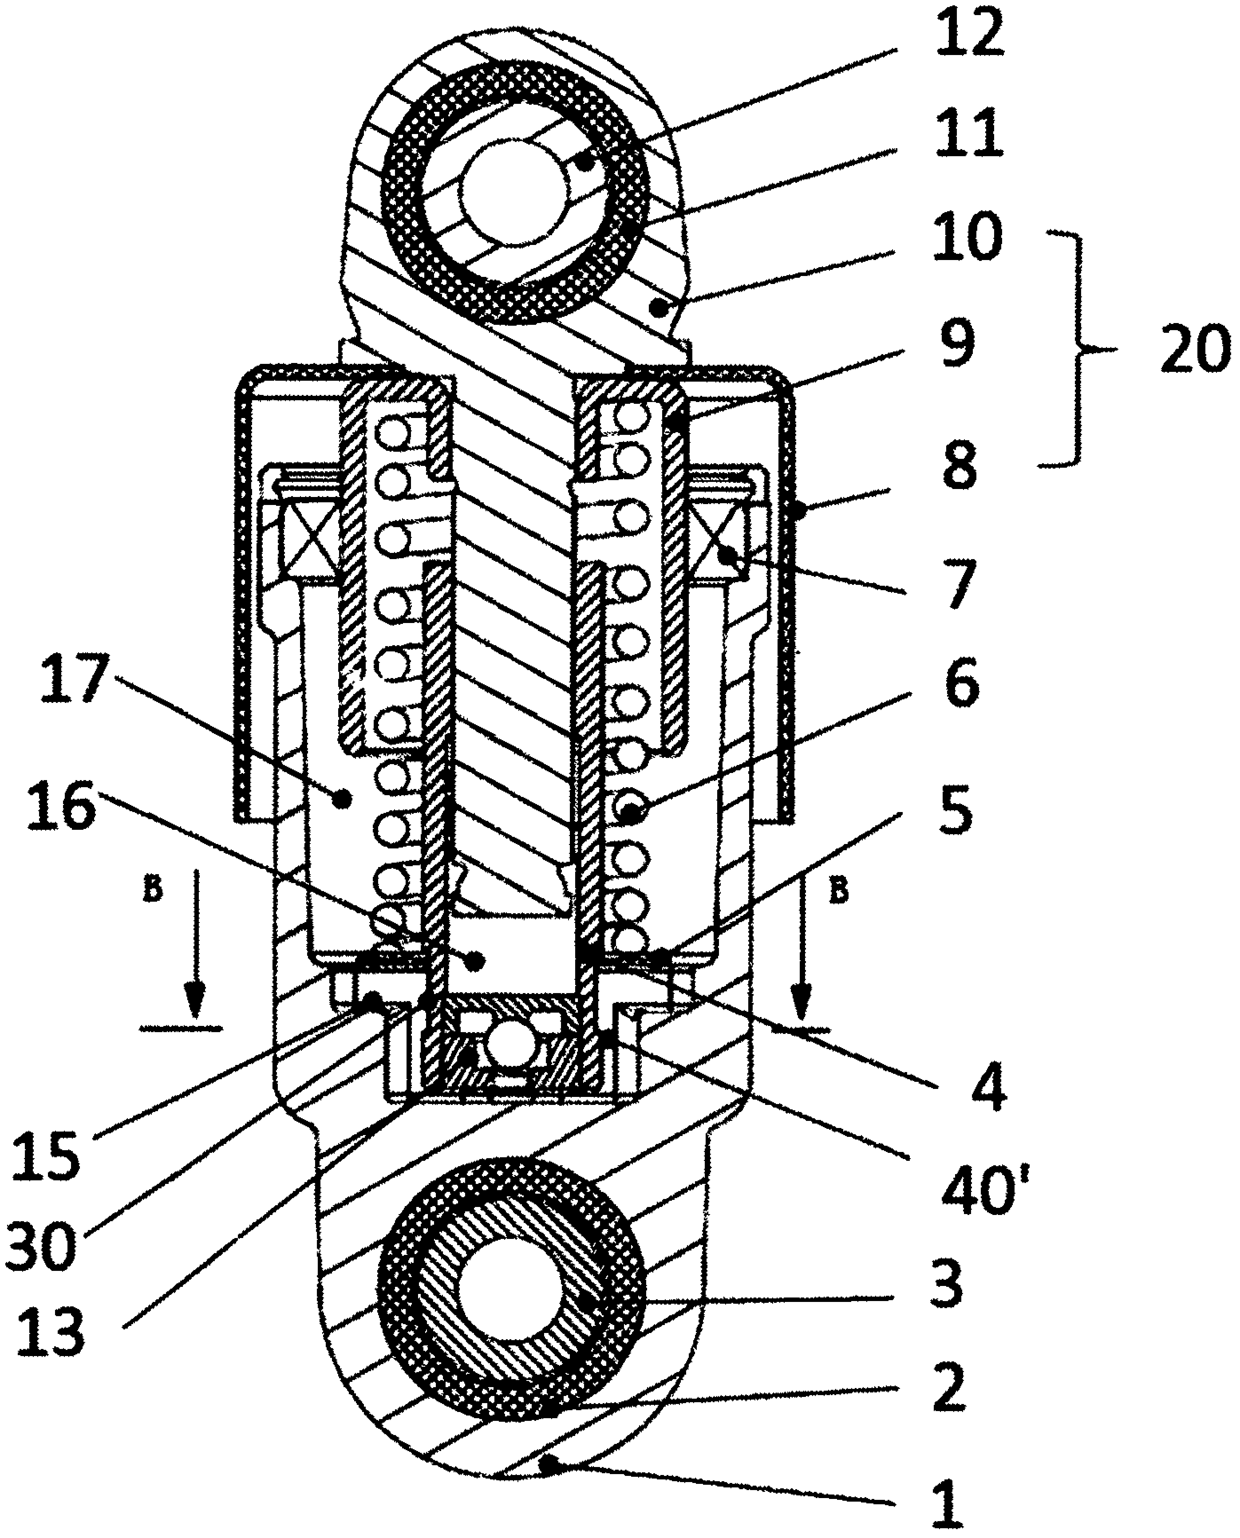 Hydraulic rod and hydraulic tensioner with hydraulic rod